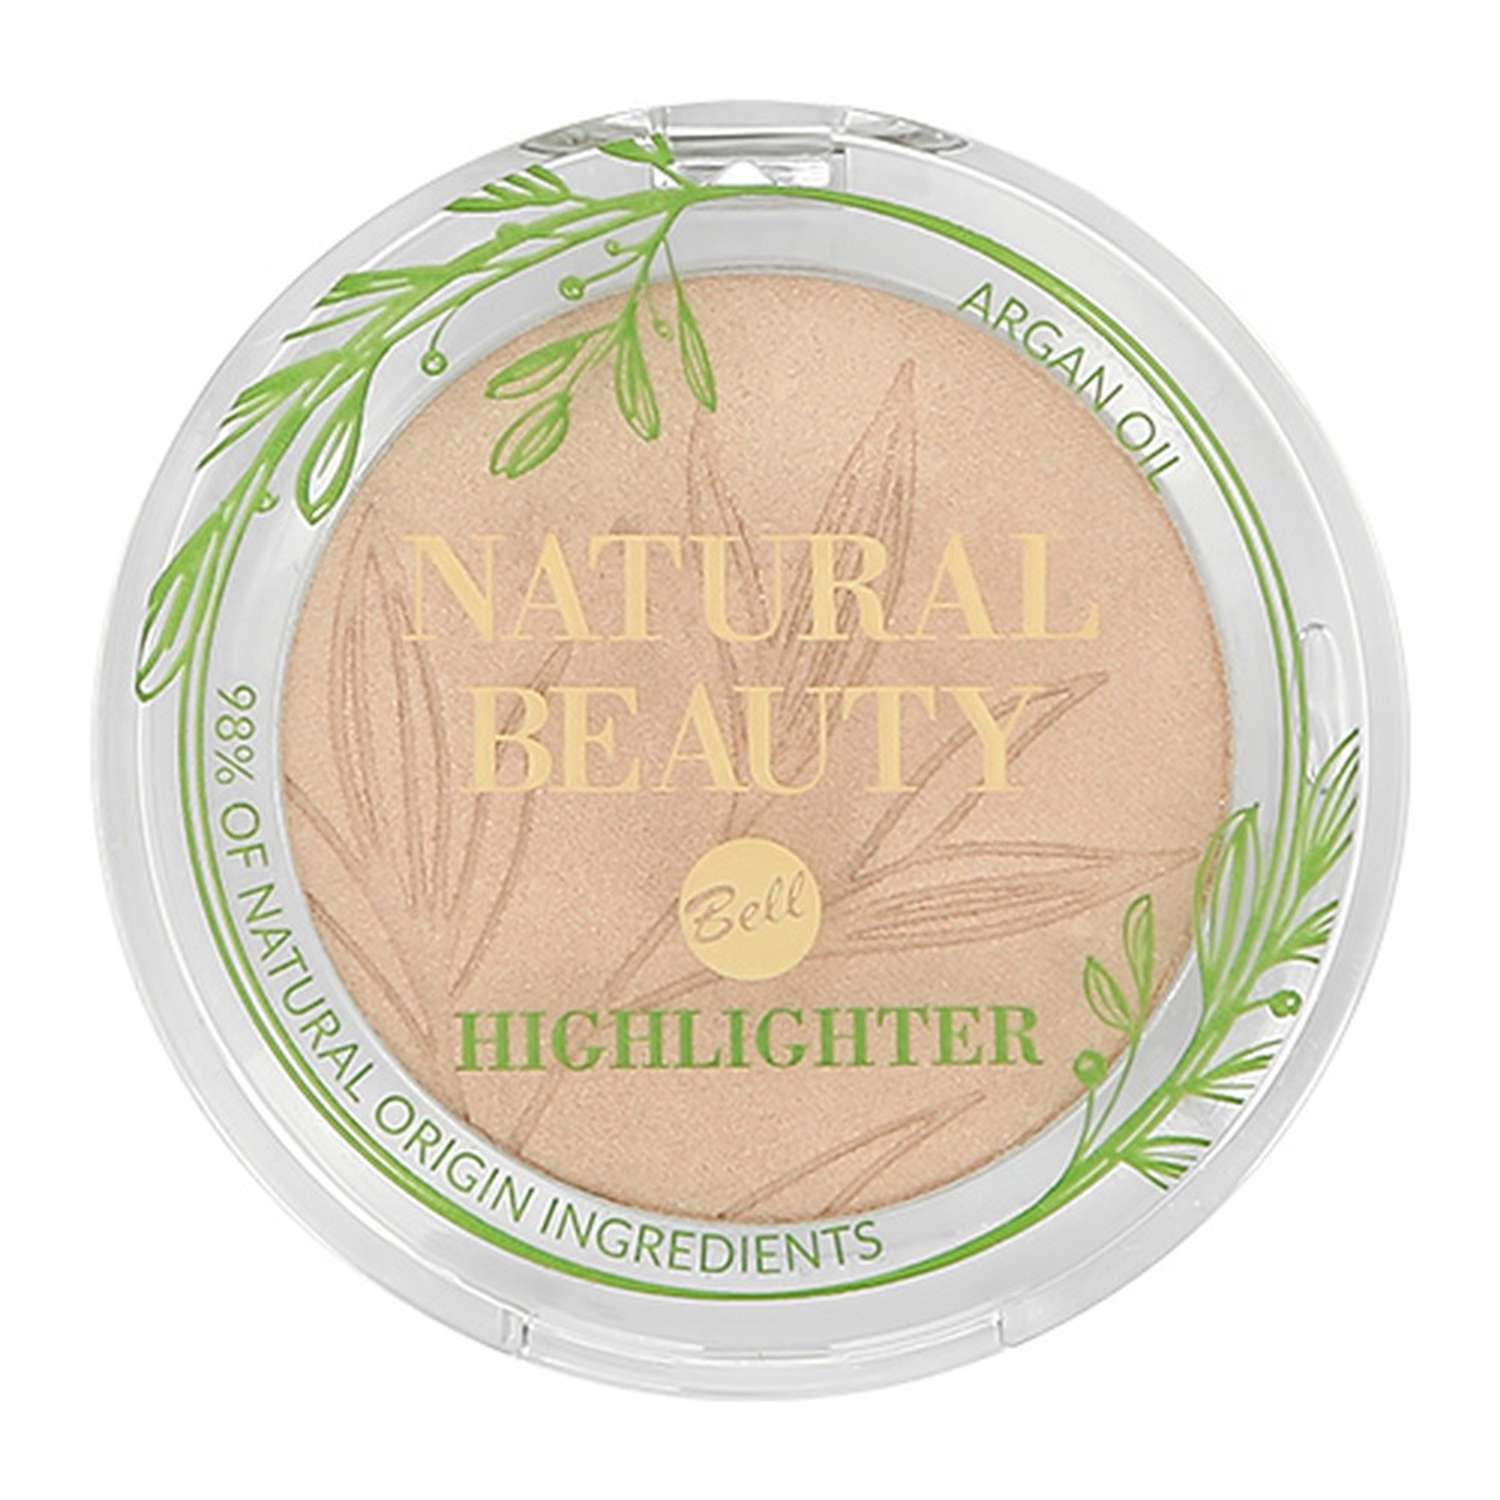 Хайлайтер Bell Natural beauty highlighter тон pure light для лица и тела 98% натуральных ингредиентов - фото 4